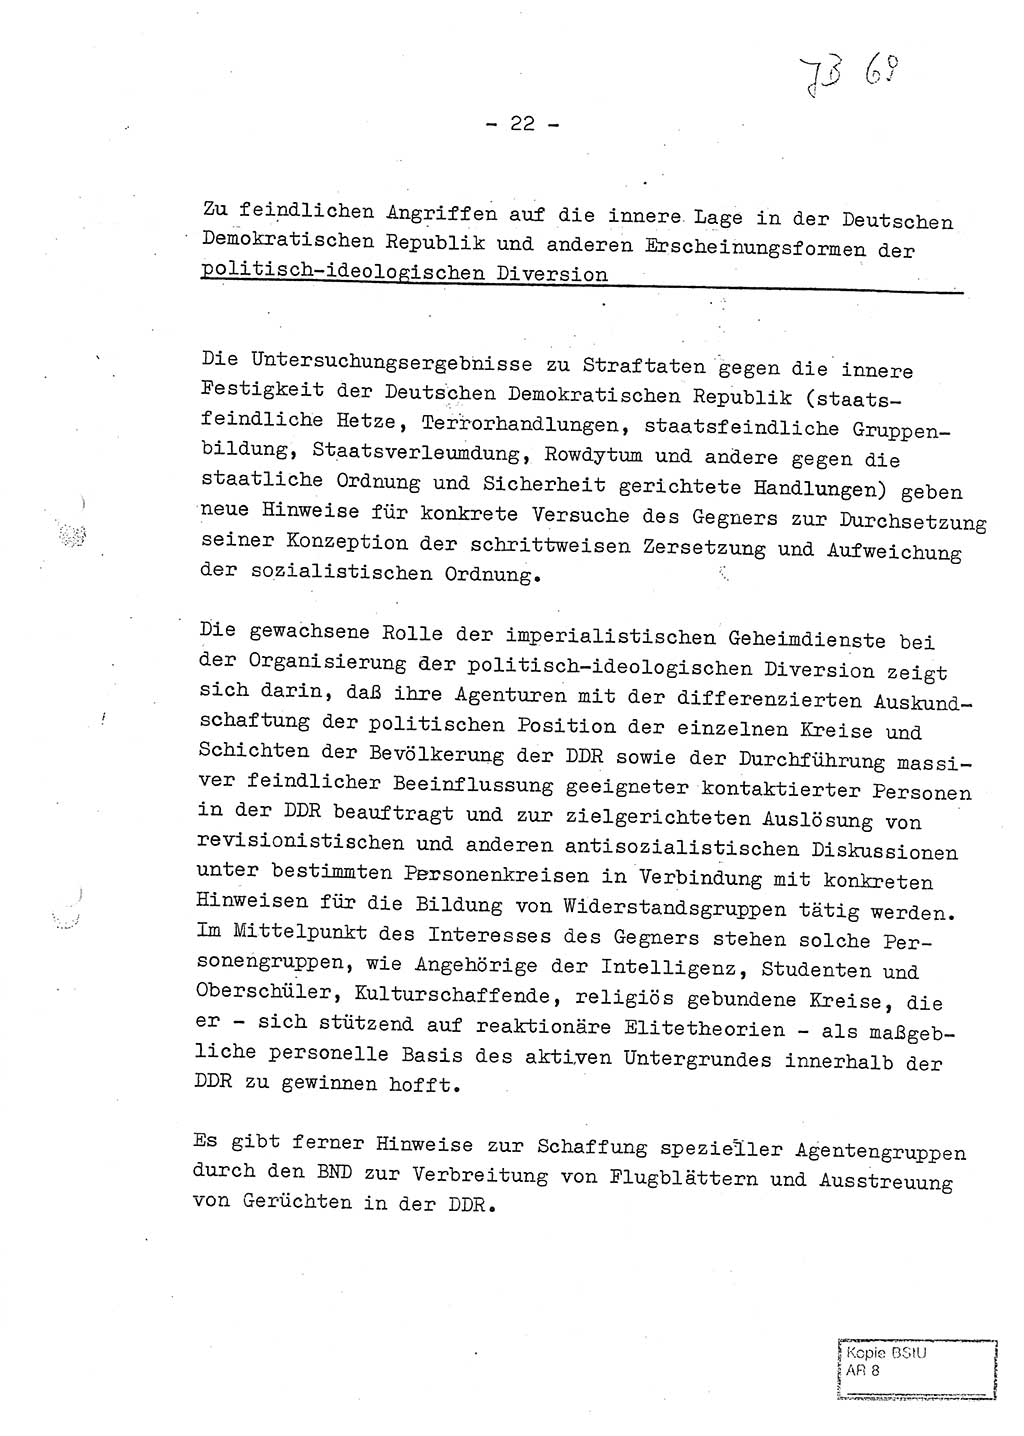 Jahresbericht der Hauptabteilung (HA) Ⅸ 1969 des Ministeriums für Staatssicherheit (MfS) der Deutschen Demokratischen Republik (DDR), Berlin 1970, Seite 22 (J.-Ber. MfS DDR HA Ⅸ /69 1970, S. 22)